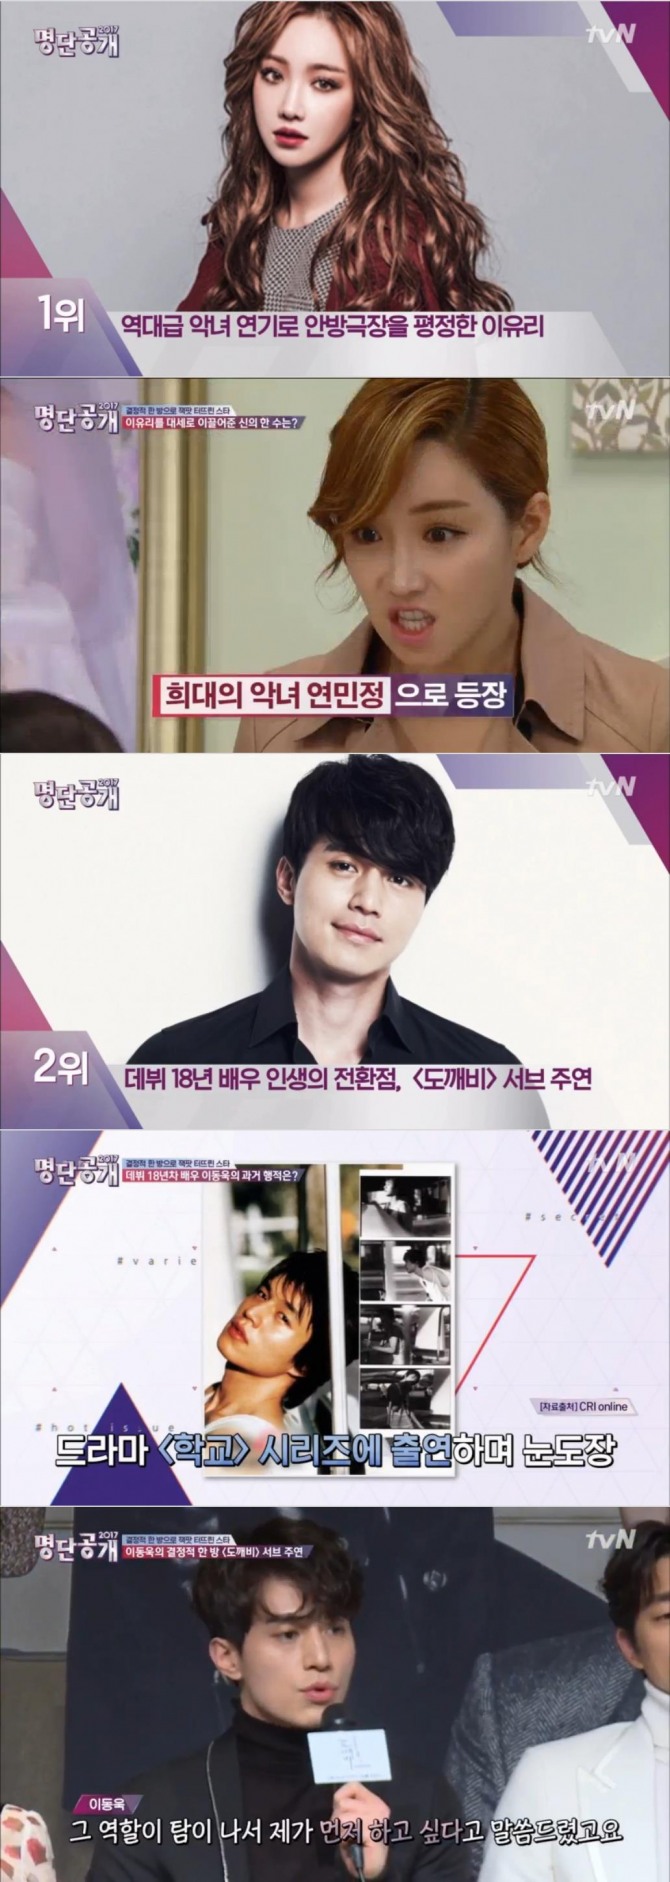 6일 방송된 tvN '명단공개'에서는 인생역전 스타 순위가 발표된 가운데 이유리와 드라마 '도깨비' 저승사자 이동욱이 1, 2위를 차지했다./사진=tvN 방송 캡처